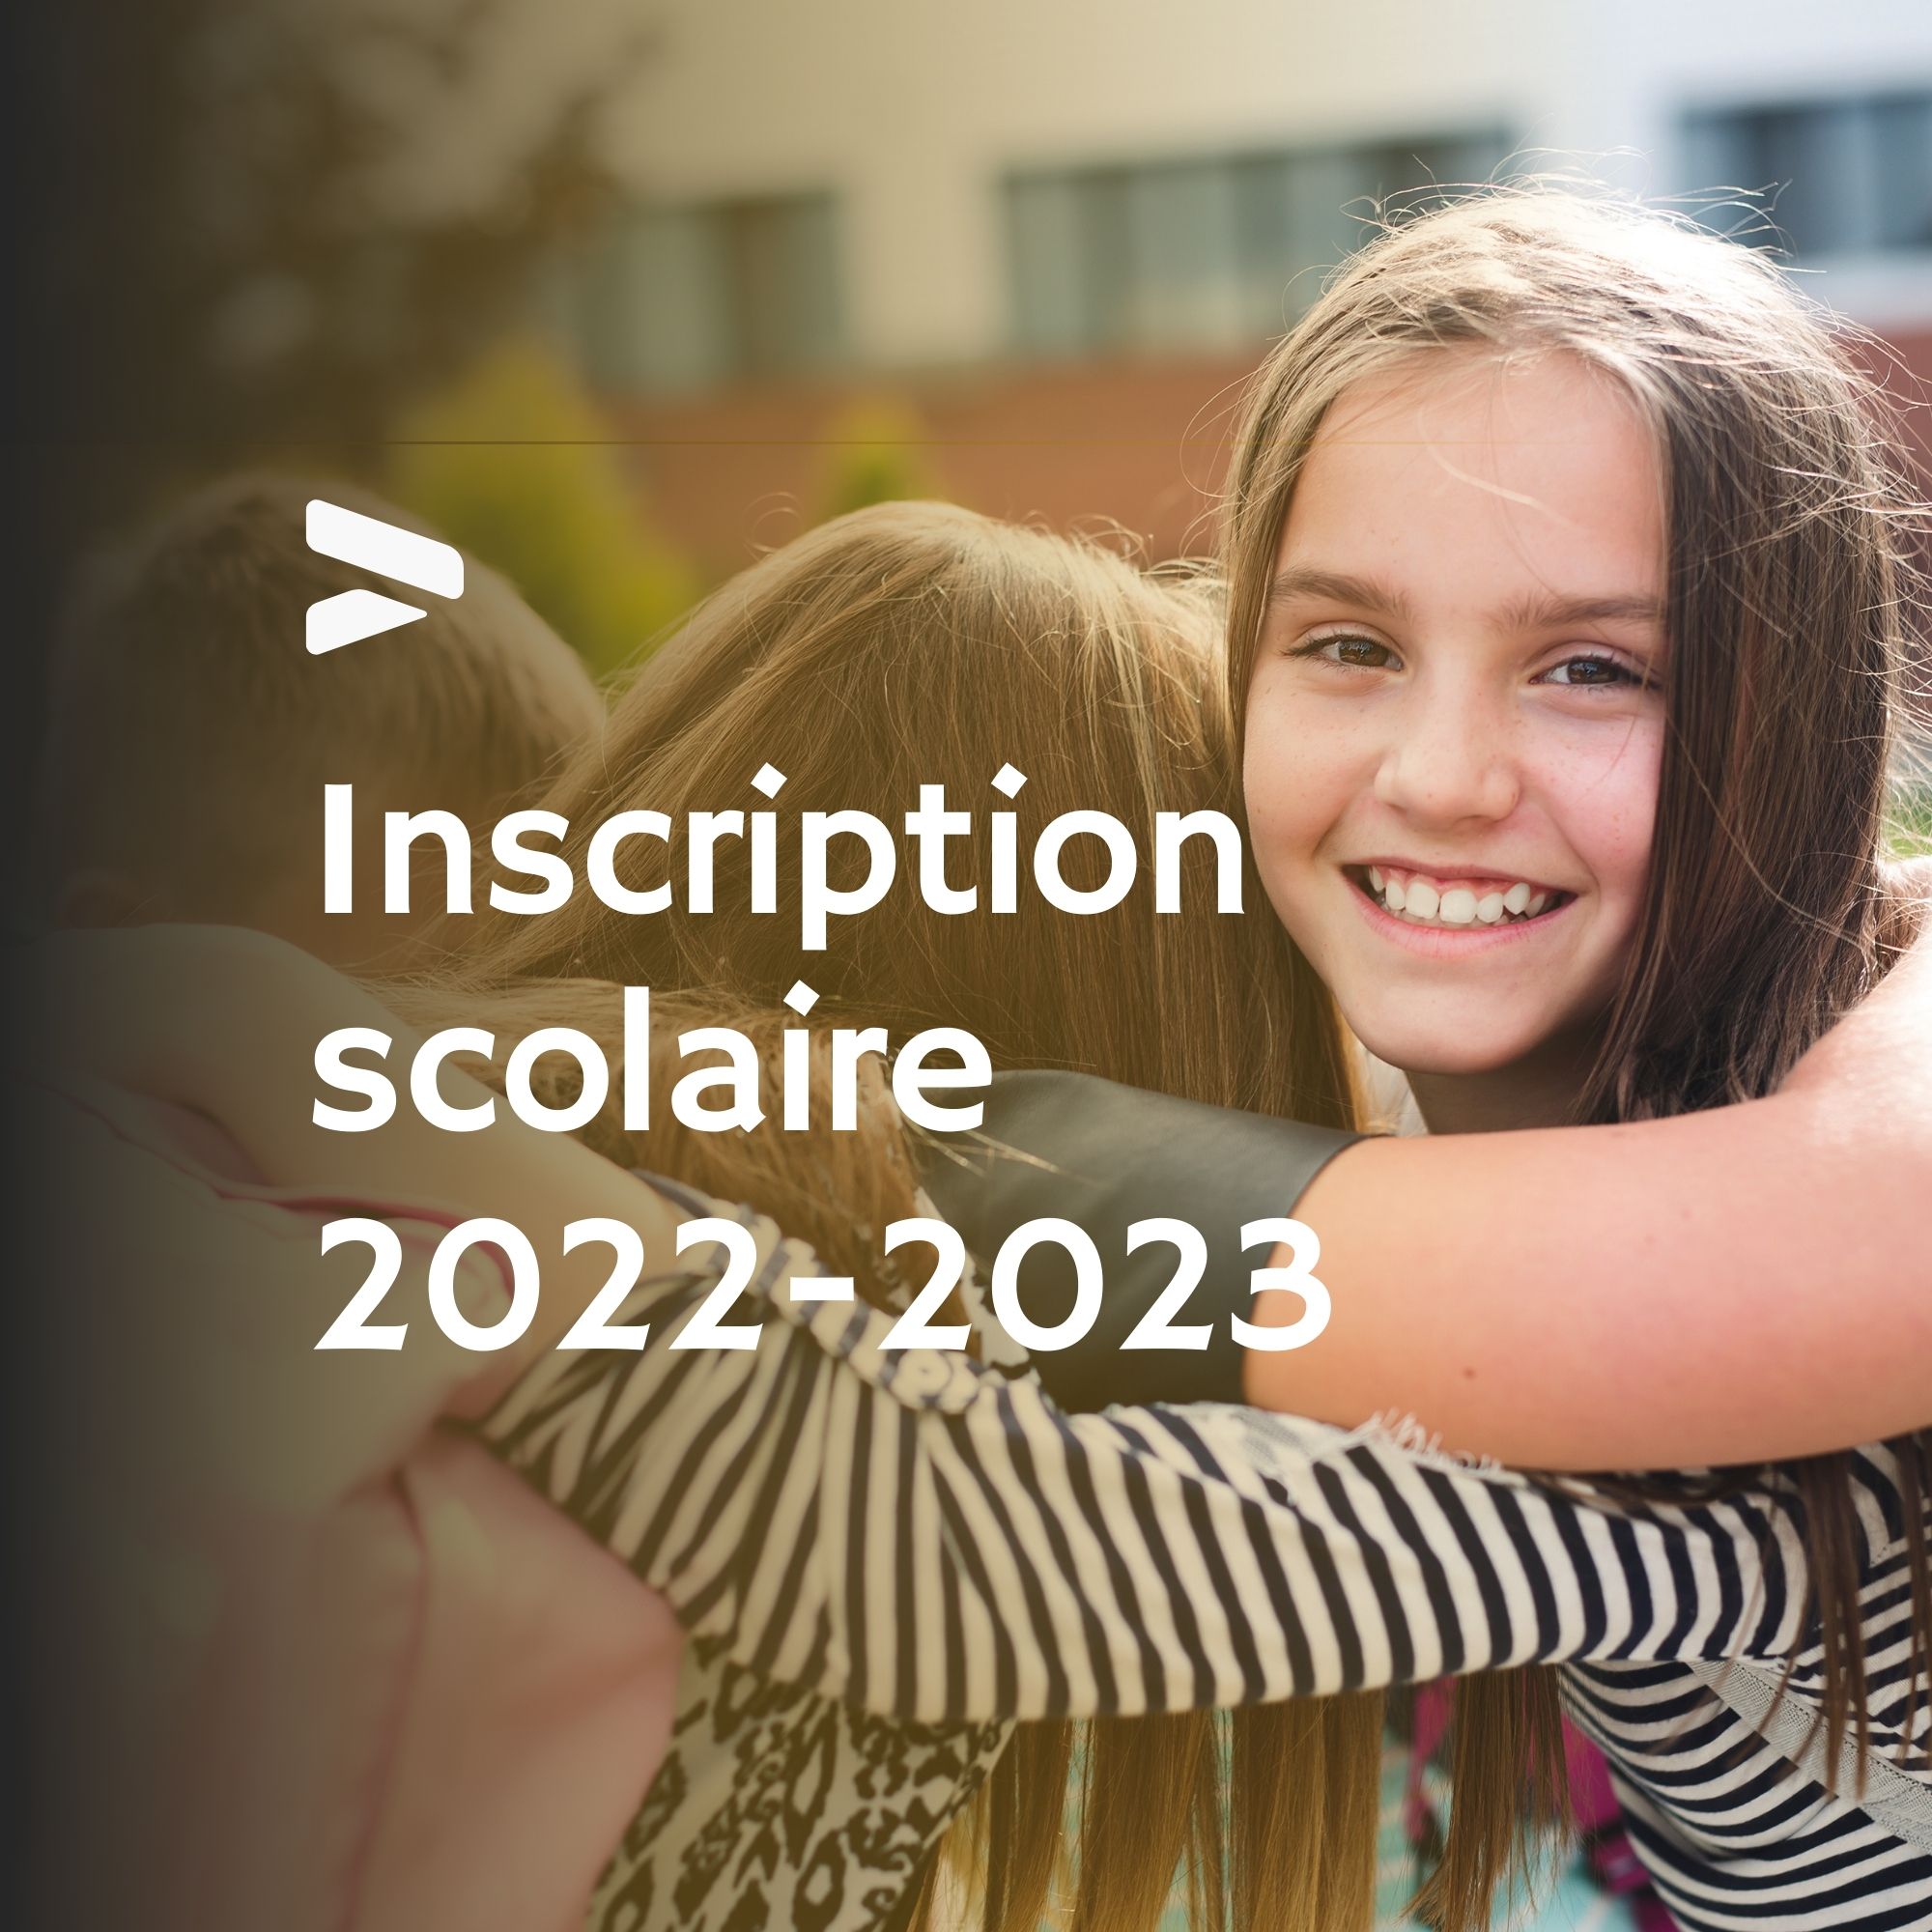 You are currently viewing Inscription scolaire 2022-2023 École secondaire de l’Escale de Val-des-Sources